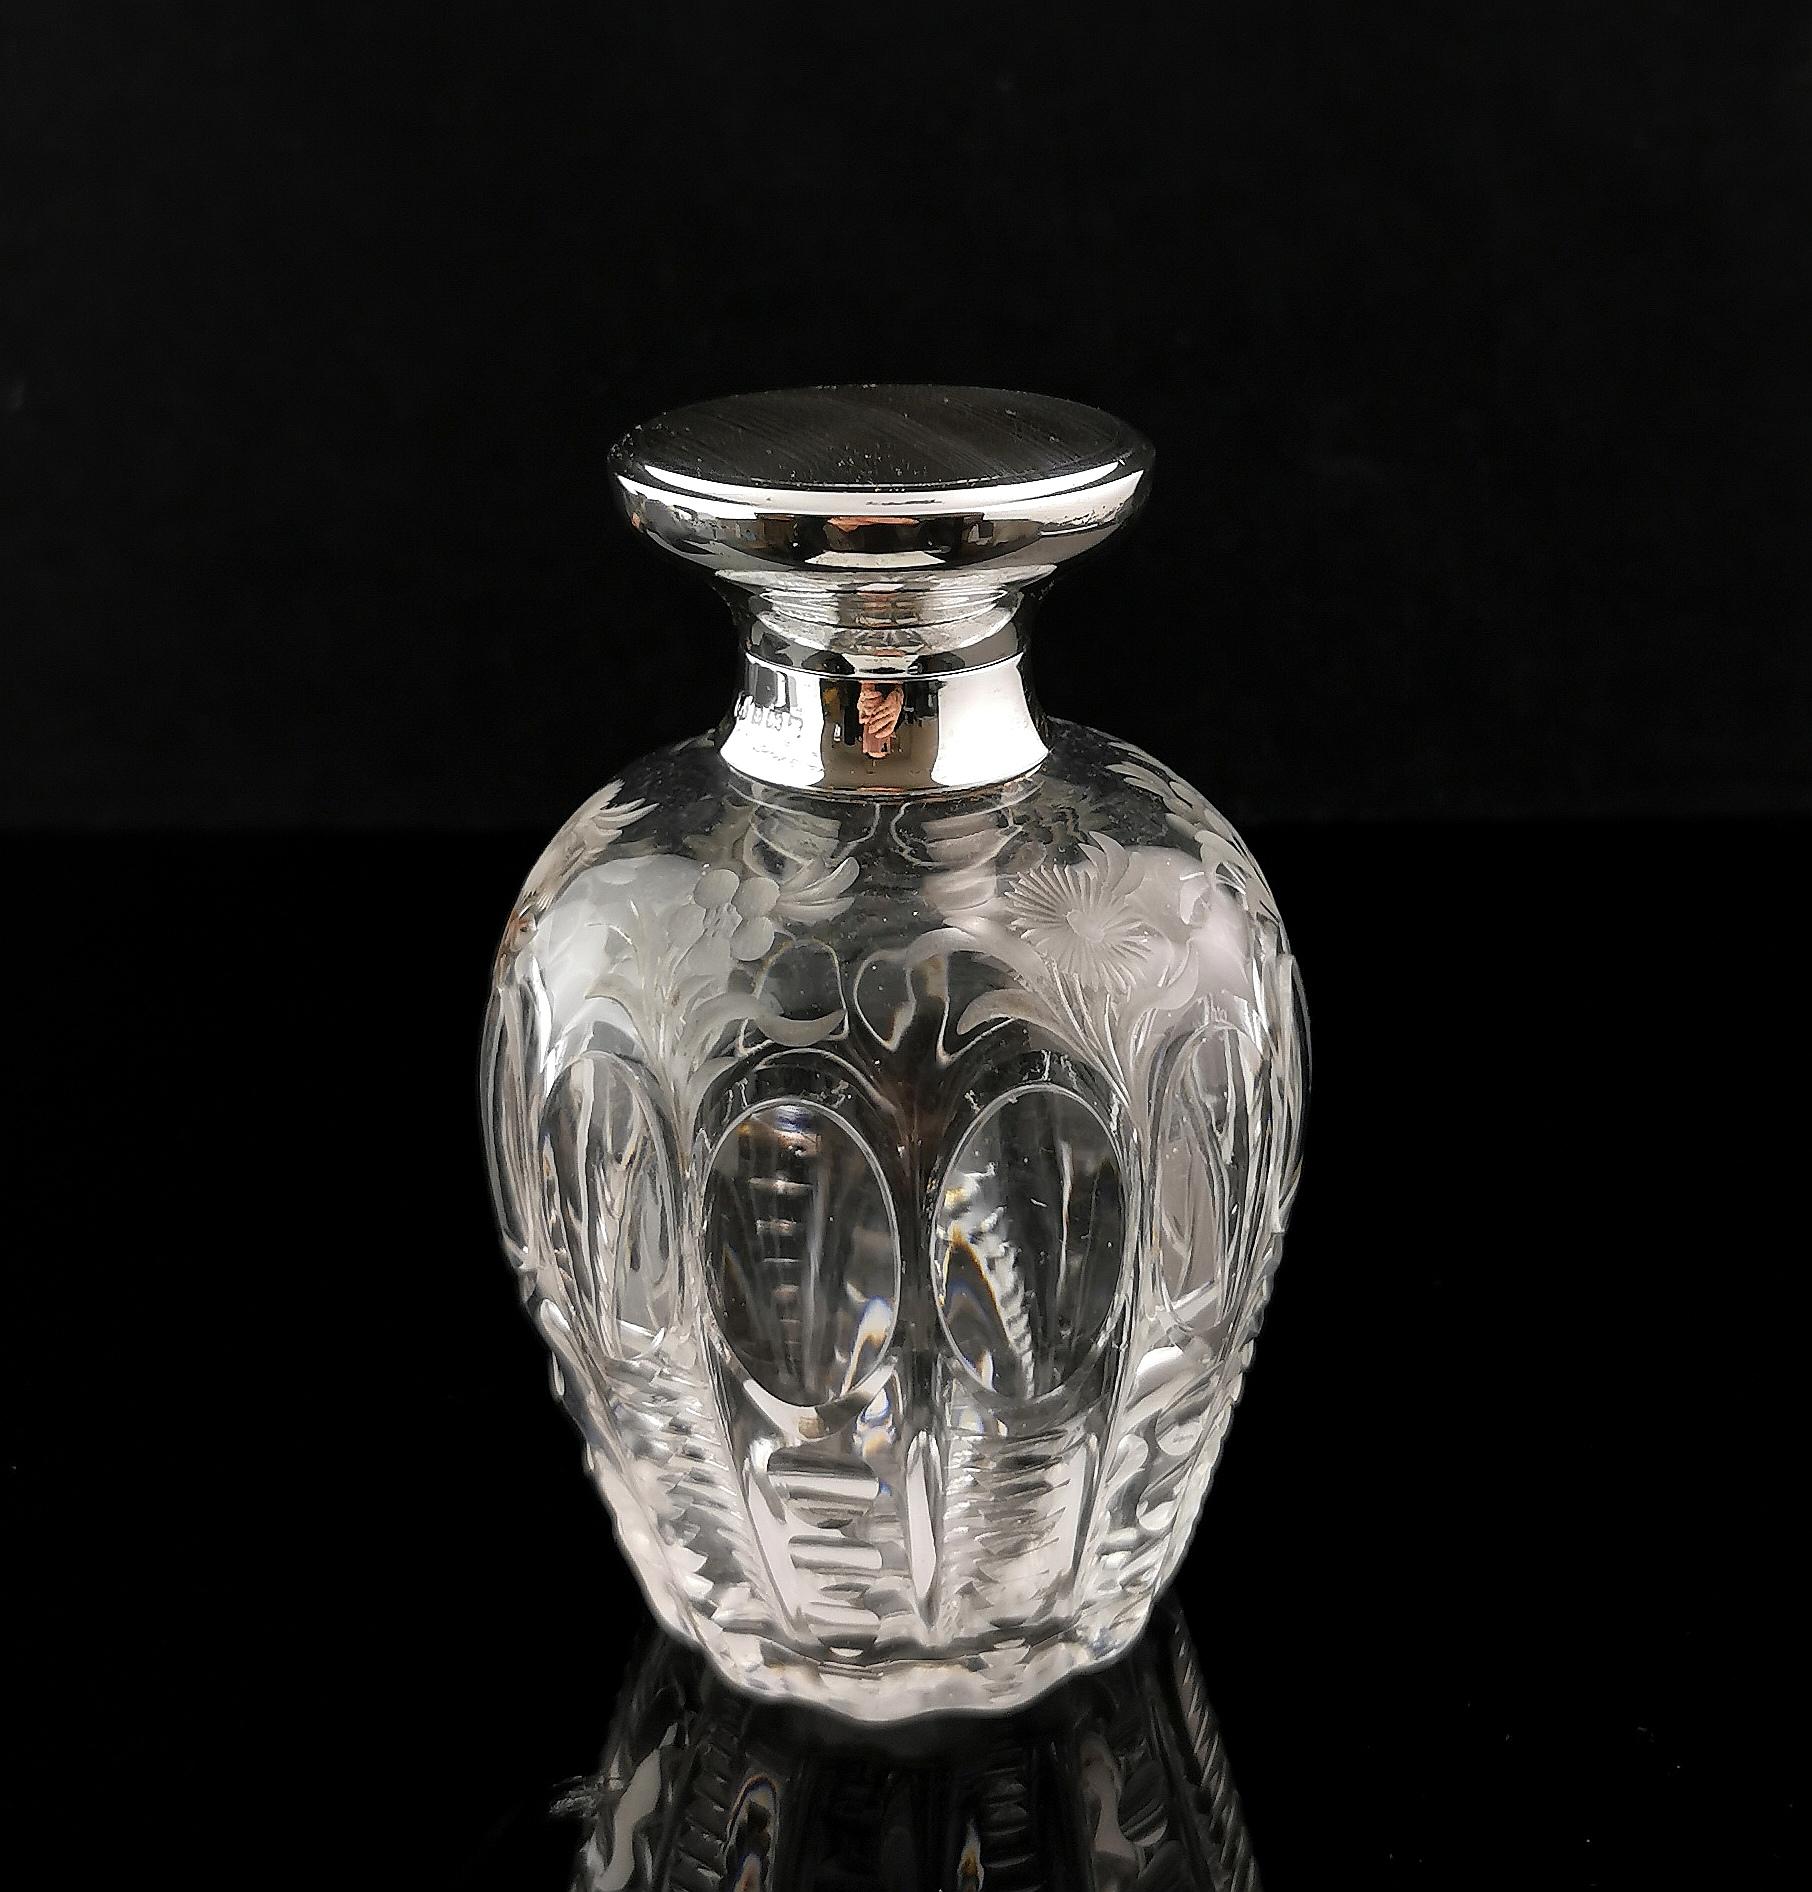 Un superbe flacon de parfum antique de l'époque Arte Antiques.

Il s'agit d'une grande bouteille de forme ovoïde aux côtés lobés, avec un délicat et joli motif floral gravé sur les parties supérieures du corps.

Le couvercle est en argent sterling